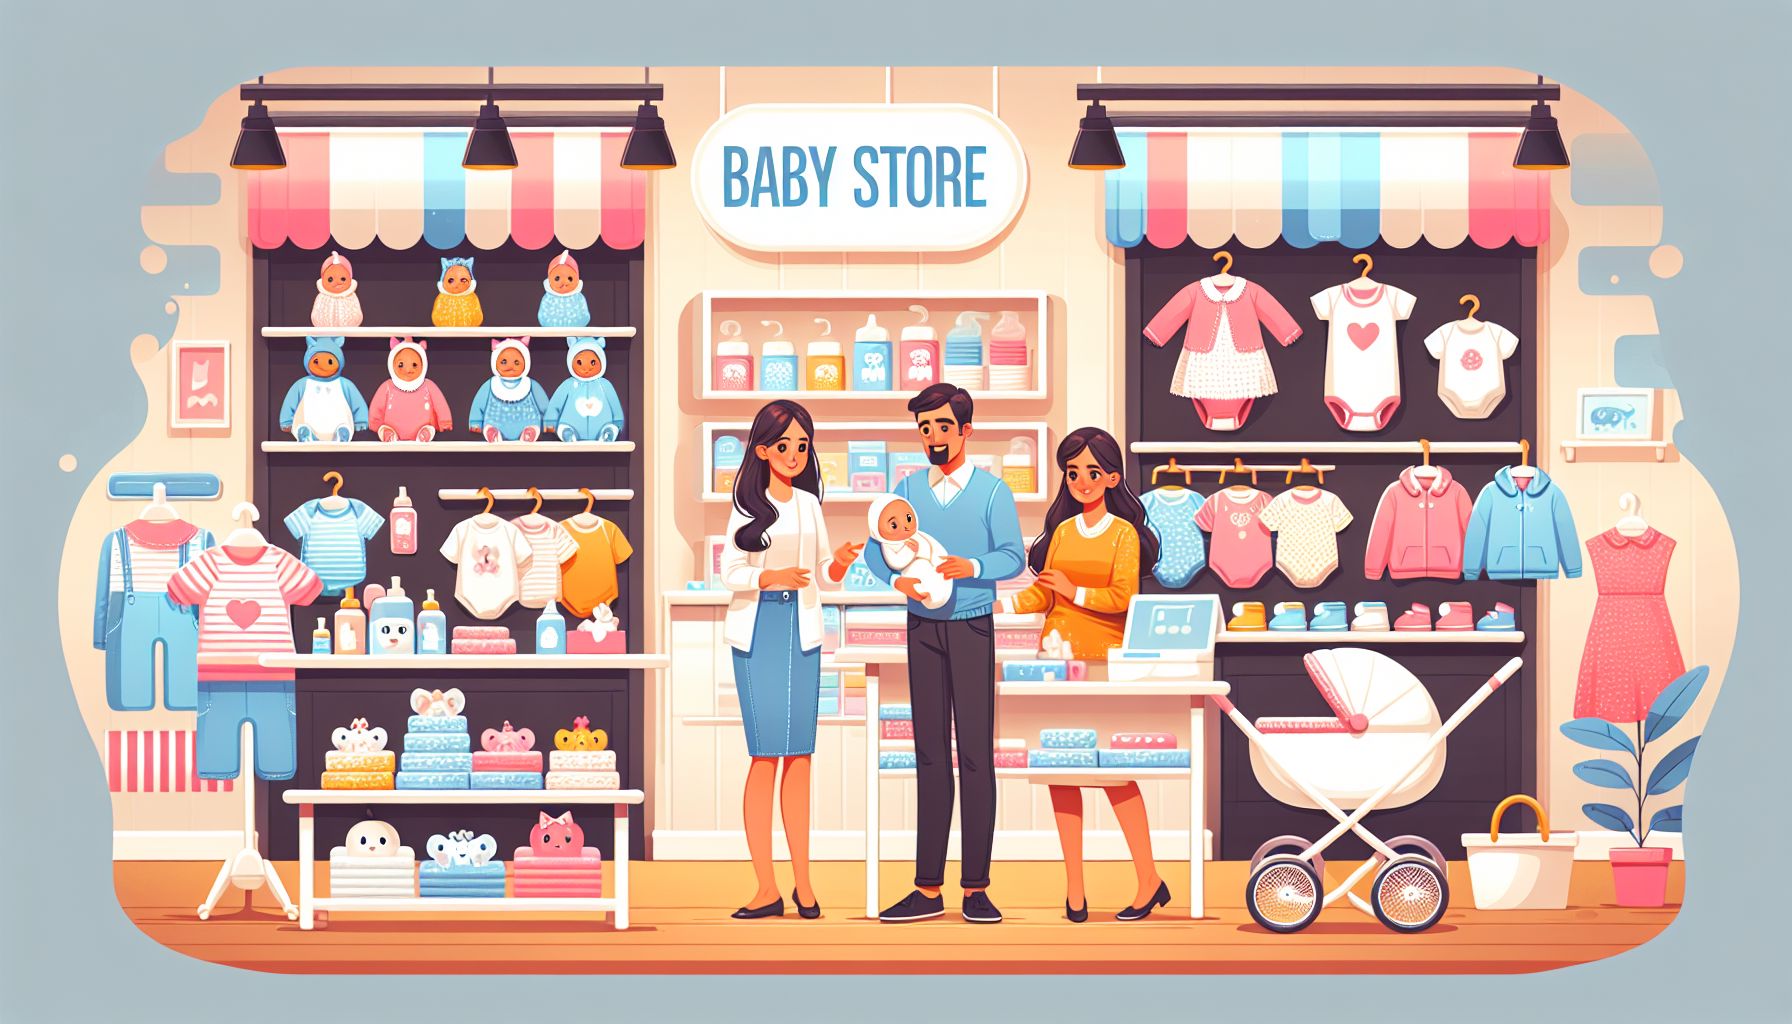 Bebisbutiken är den perfekta platsen för alla dina babykläder behov